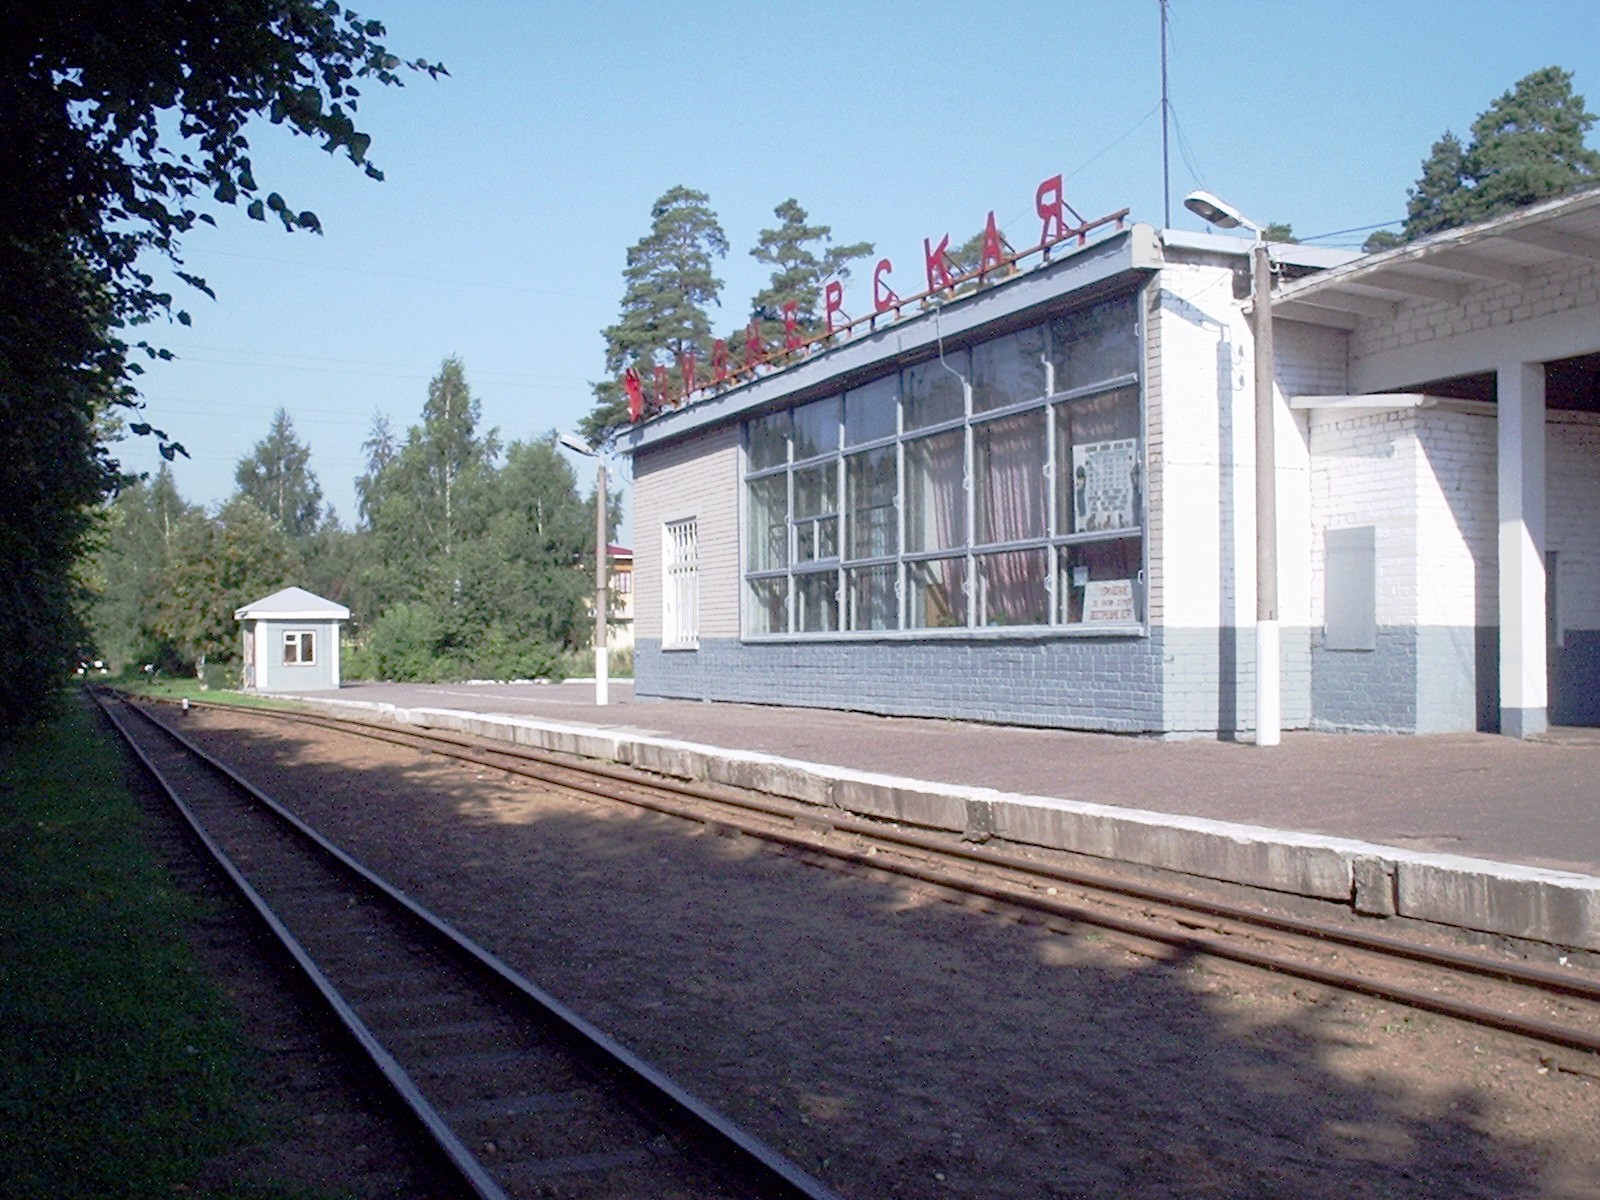 Ярославская (Малая Северная) детская железная дорога — фотографии, сделанные в 2005 году (часть 2)